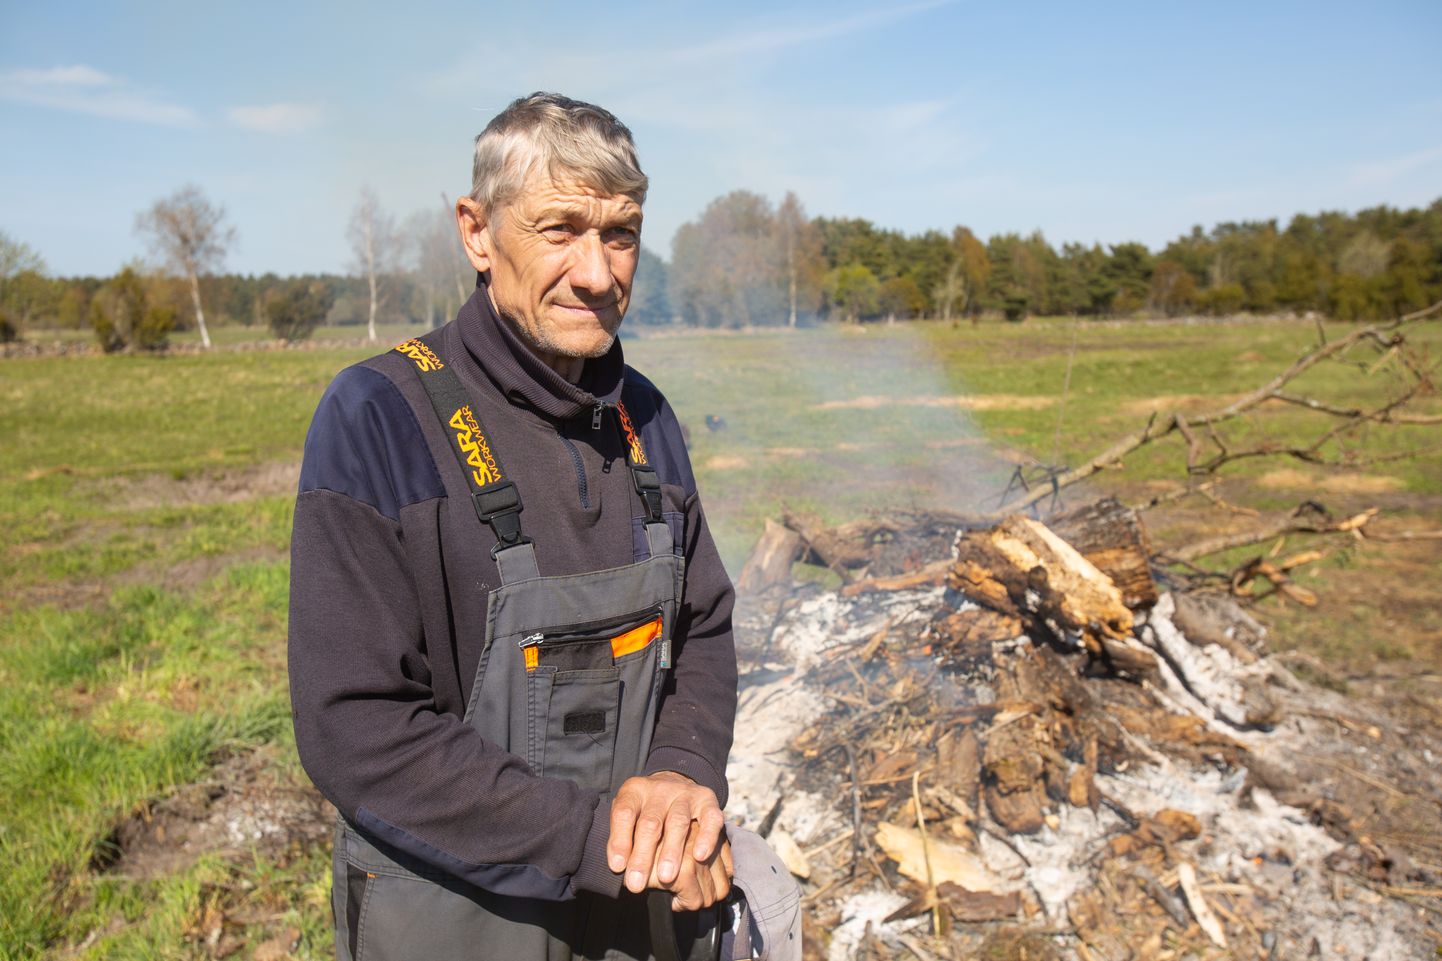 VALVAKE LÕKET: Endine pritsumees ja loomapidaja Kalev Mai põletab karjamaadelt kokkukogutud puitmaterjali.